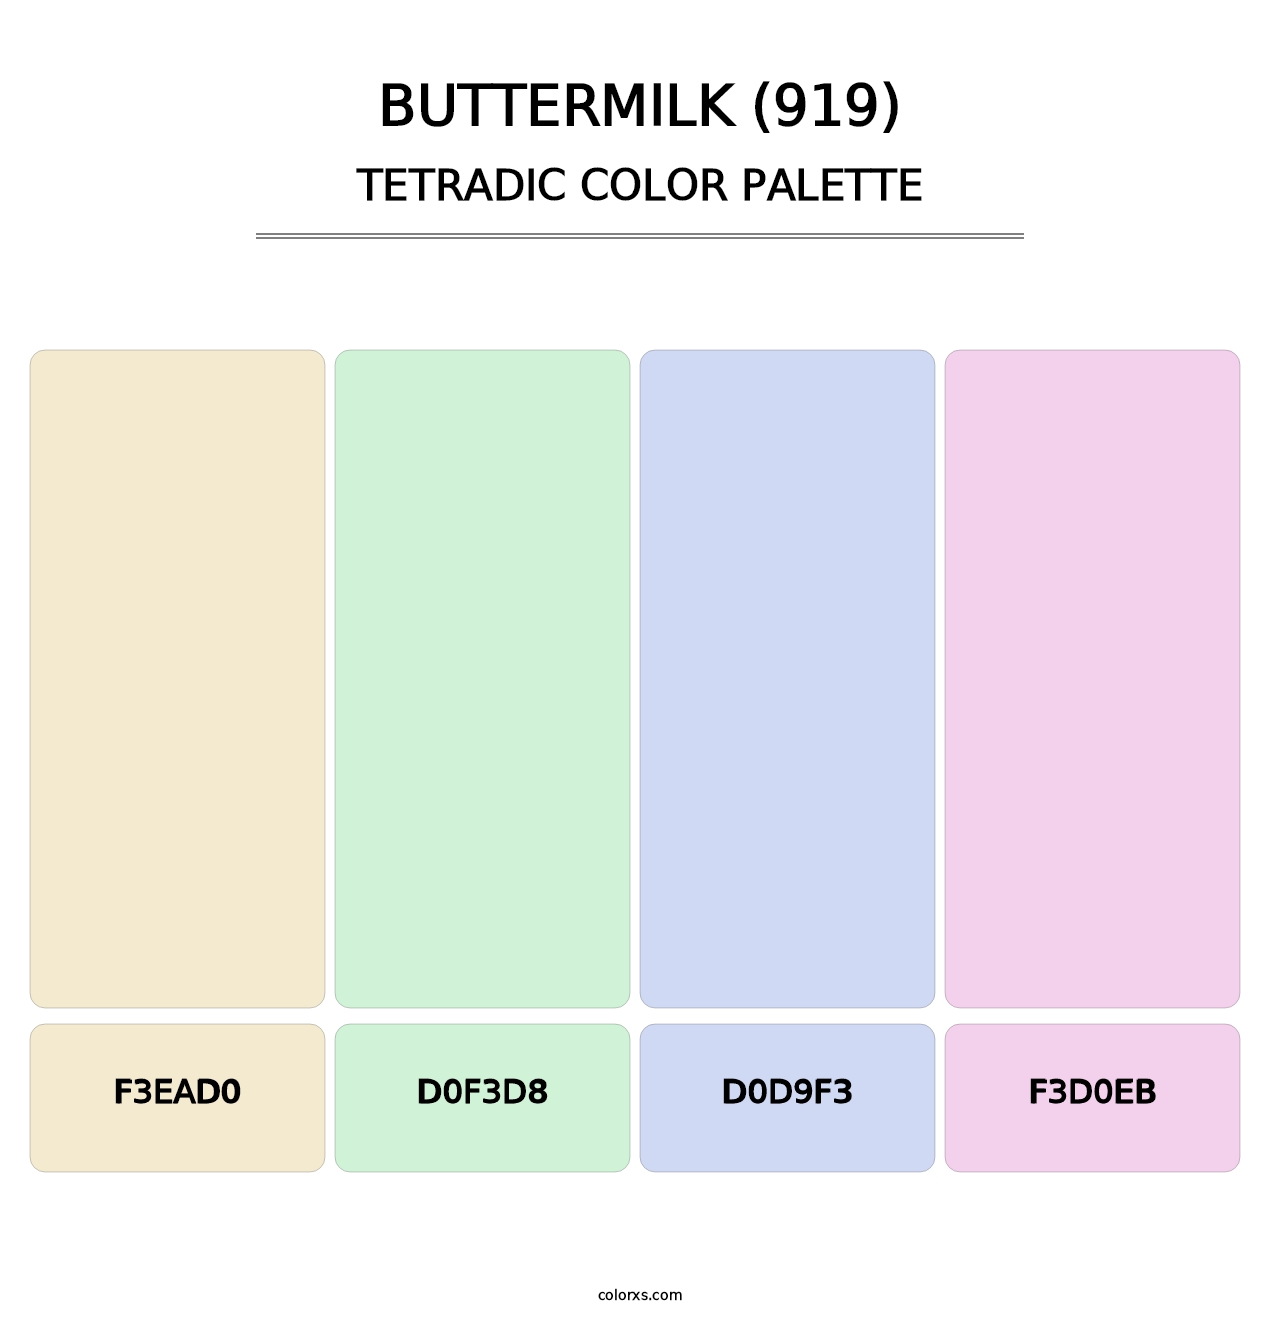 Buttermilk (919) - Tetradic Color Palette